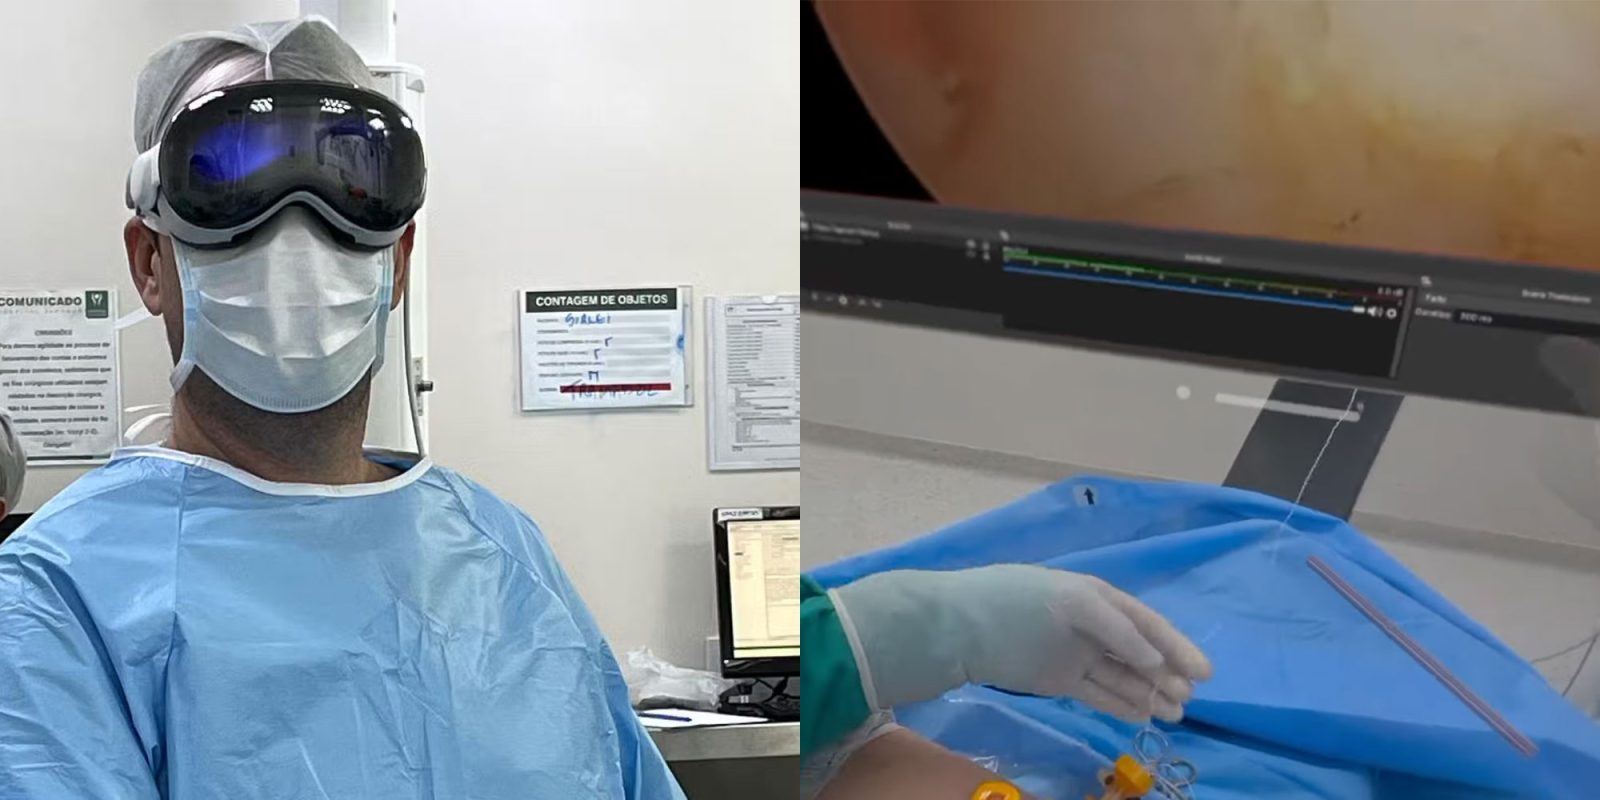 Apple Vision Pro использовался для помощи врачу во время операции артроскопии плеча в Бразилии